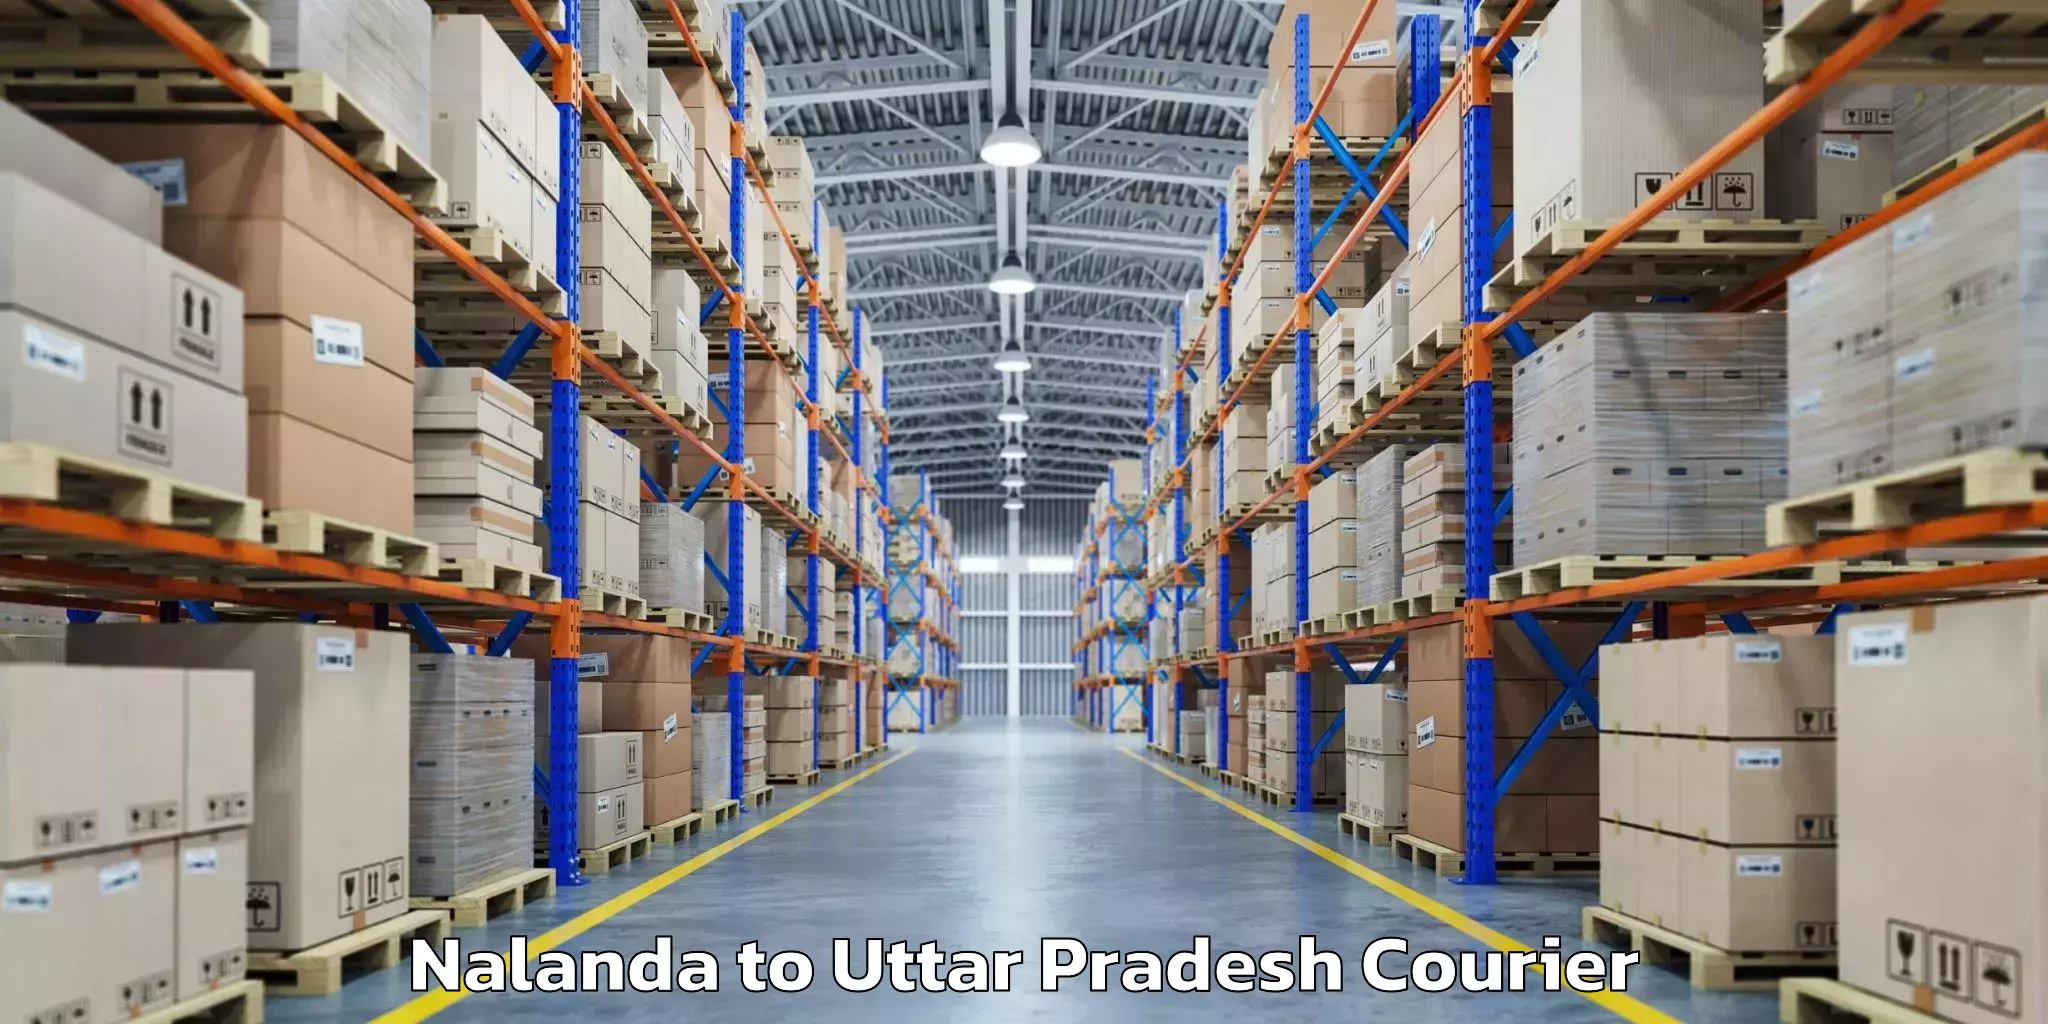 Baggage shipping quotes Nalanda to Uttar Pradesh